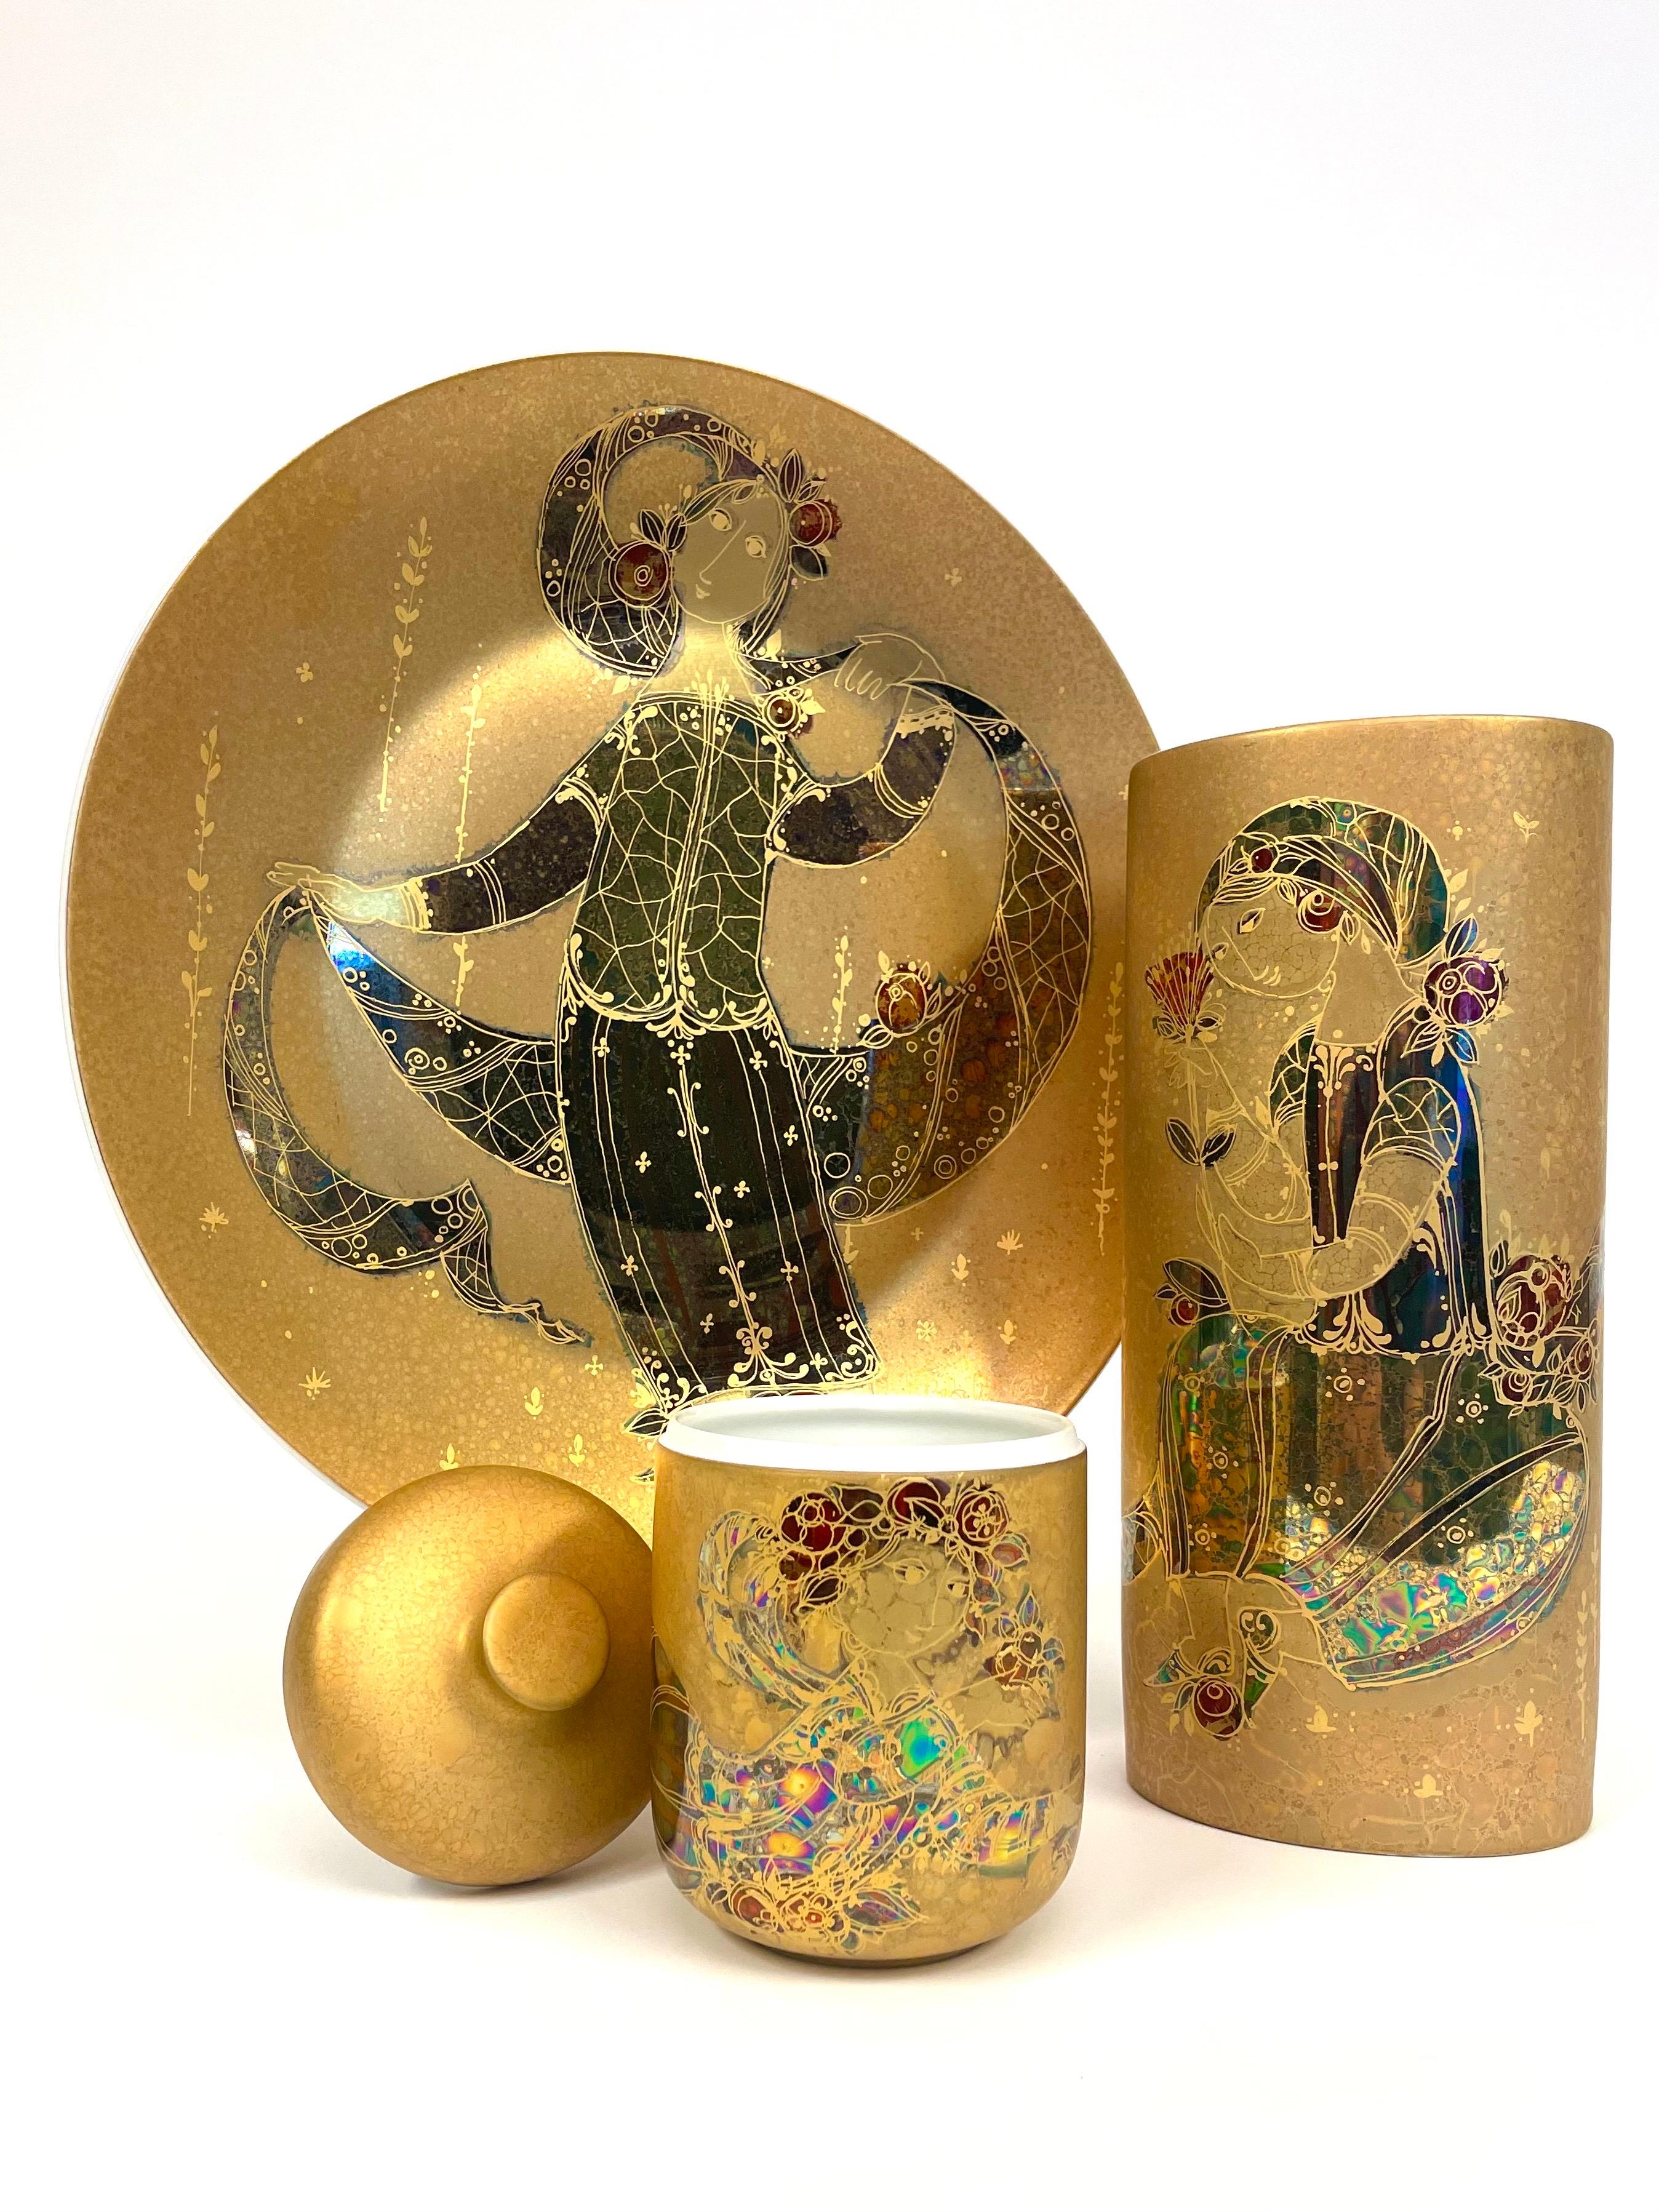 Dies ist eine deutsche Porzellankollektion von Rosenthal, die von dem Dänen Bjørn Wiinbladh entworfen wurde.
Es besteht aus drei handbemalten und teilweise vergoldeten Teilen, einer großen Platte, einer hohen ovalen Vase und einem Gefäß mit